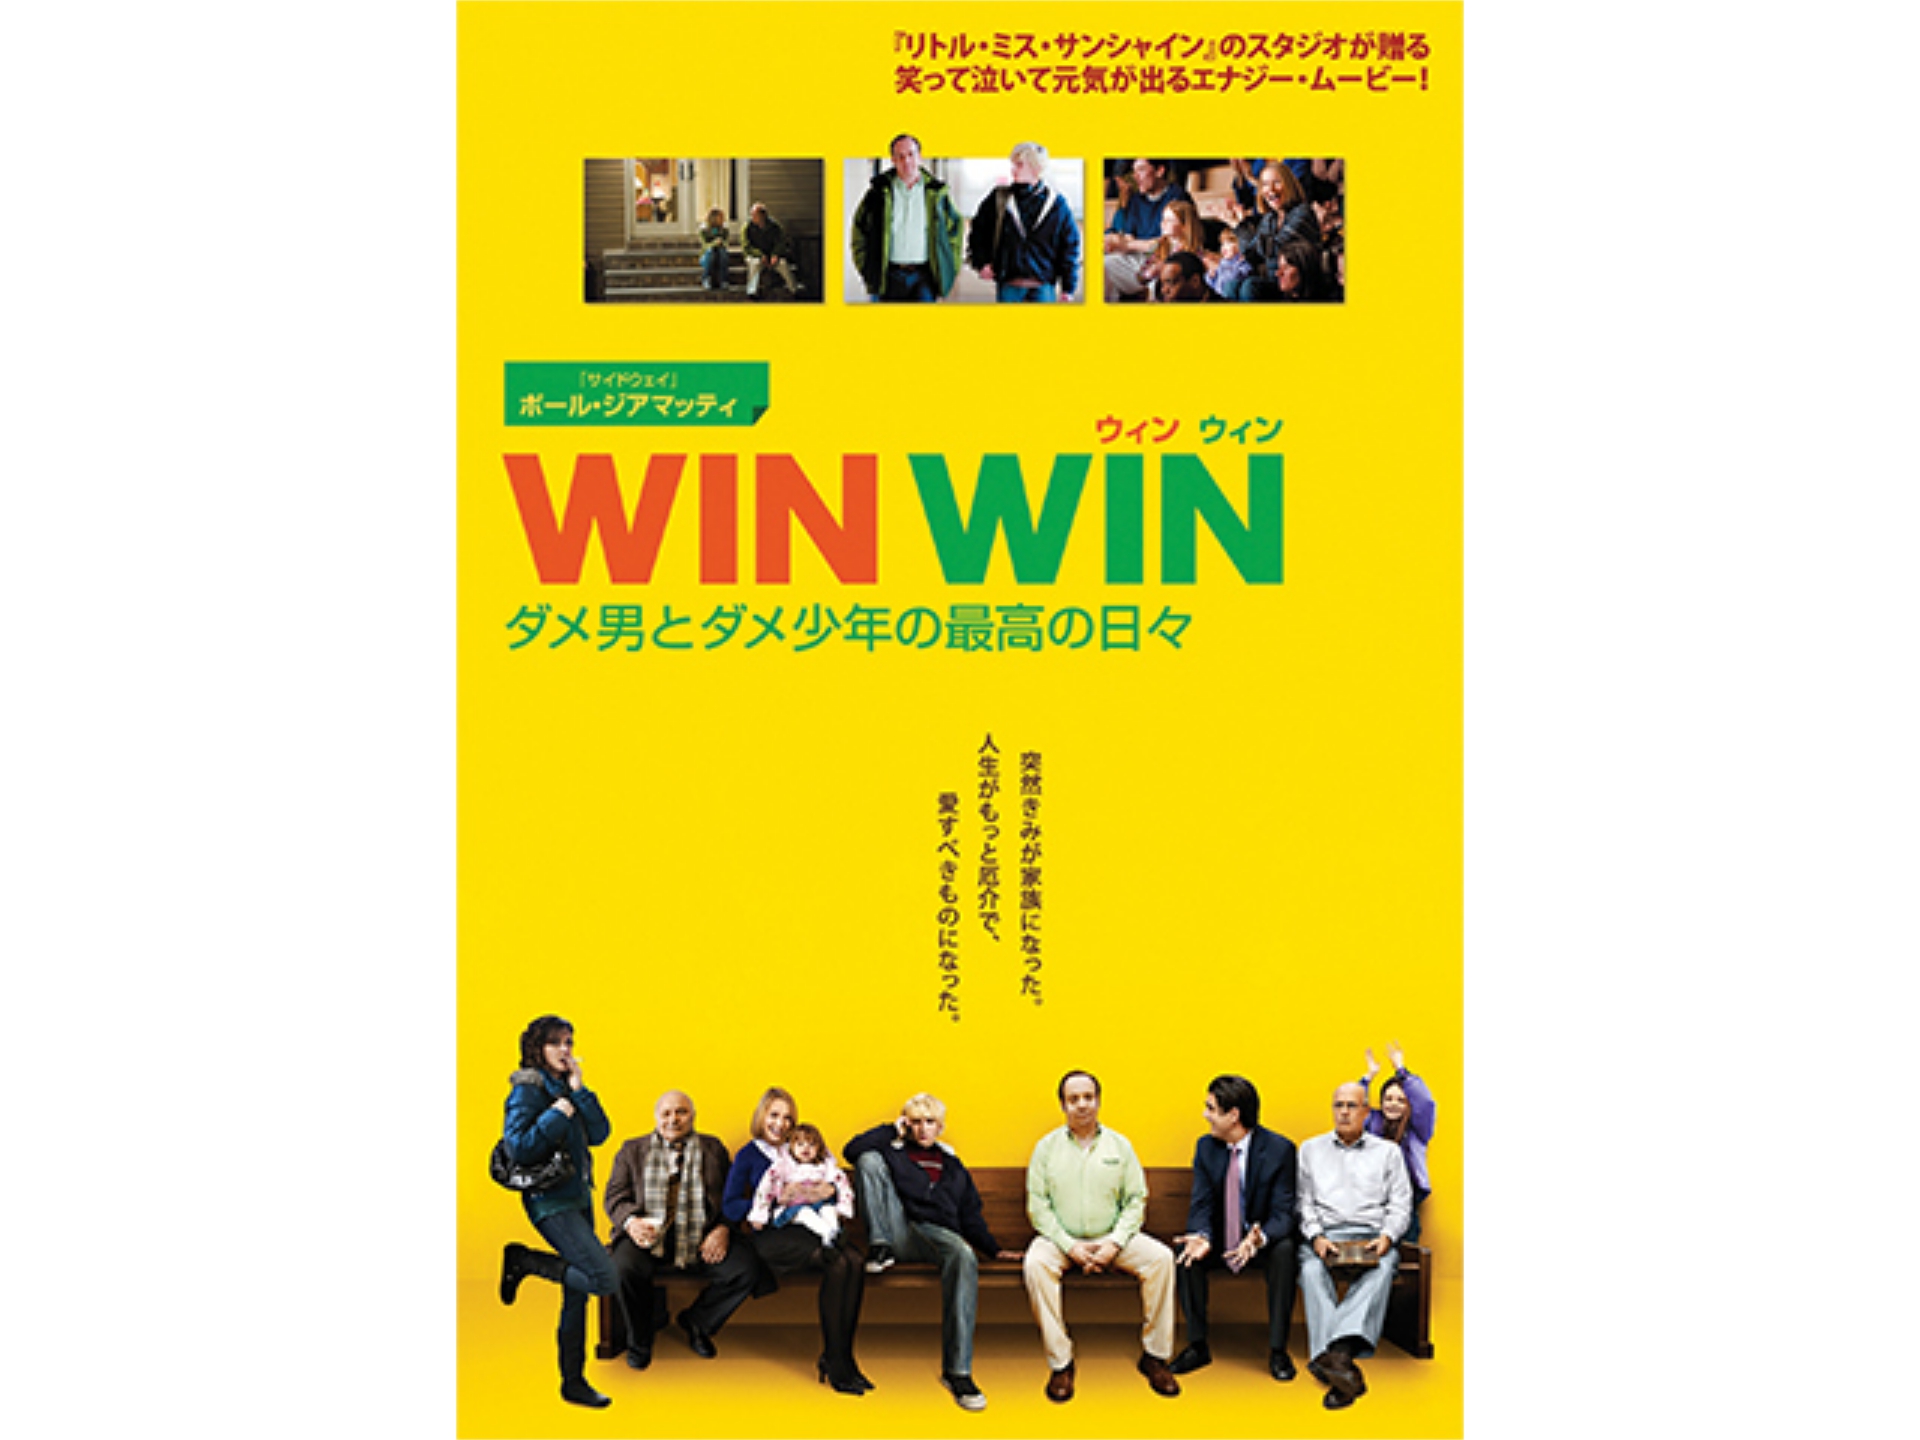 映画 Win Win ウィン ウィン ダメ男とダメ少年の最高の日々 特別編 の動画 初月無料 動画配信サービスのビデオマーケット